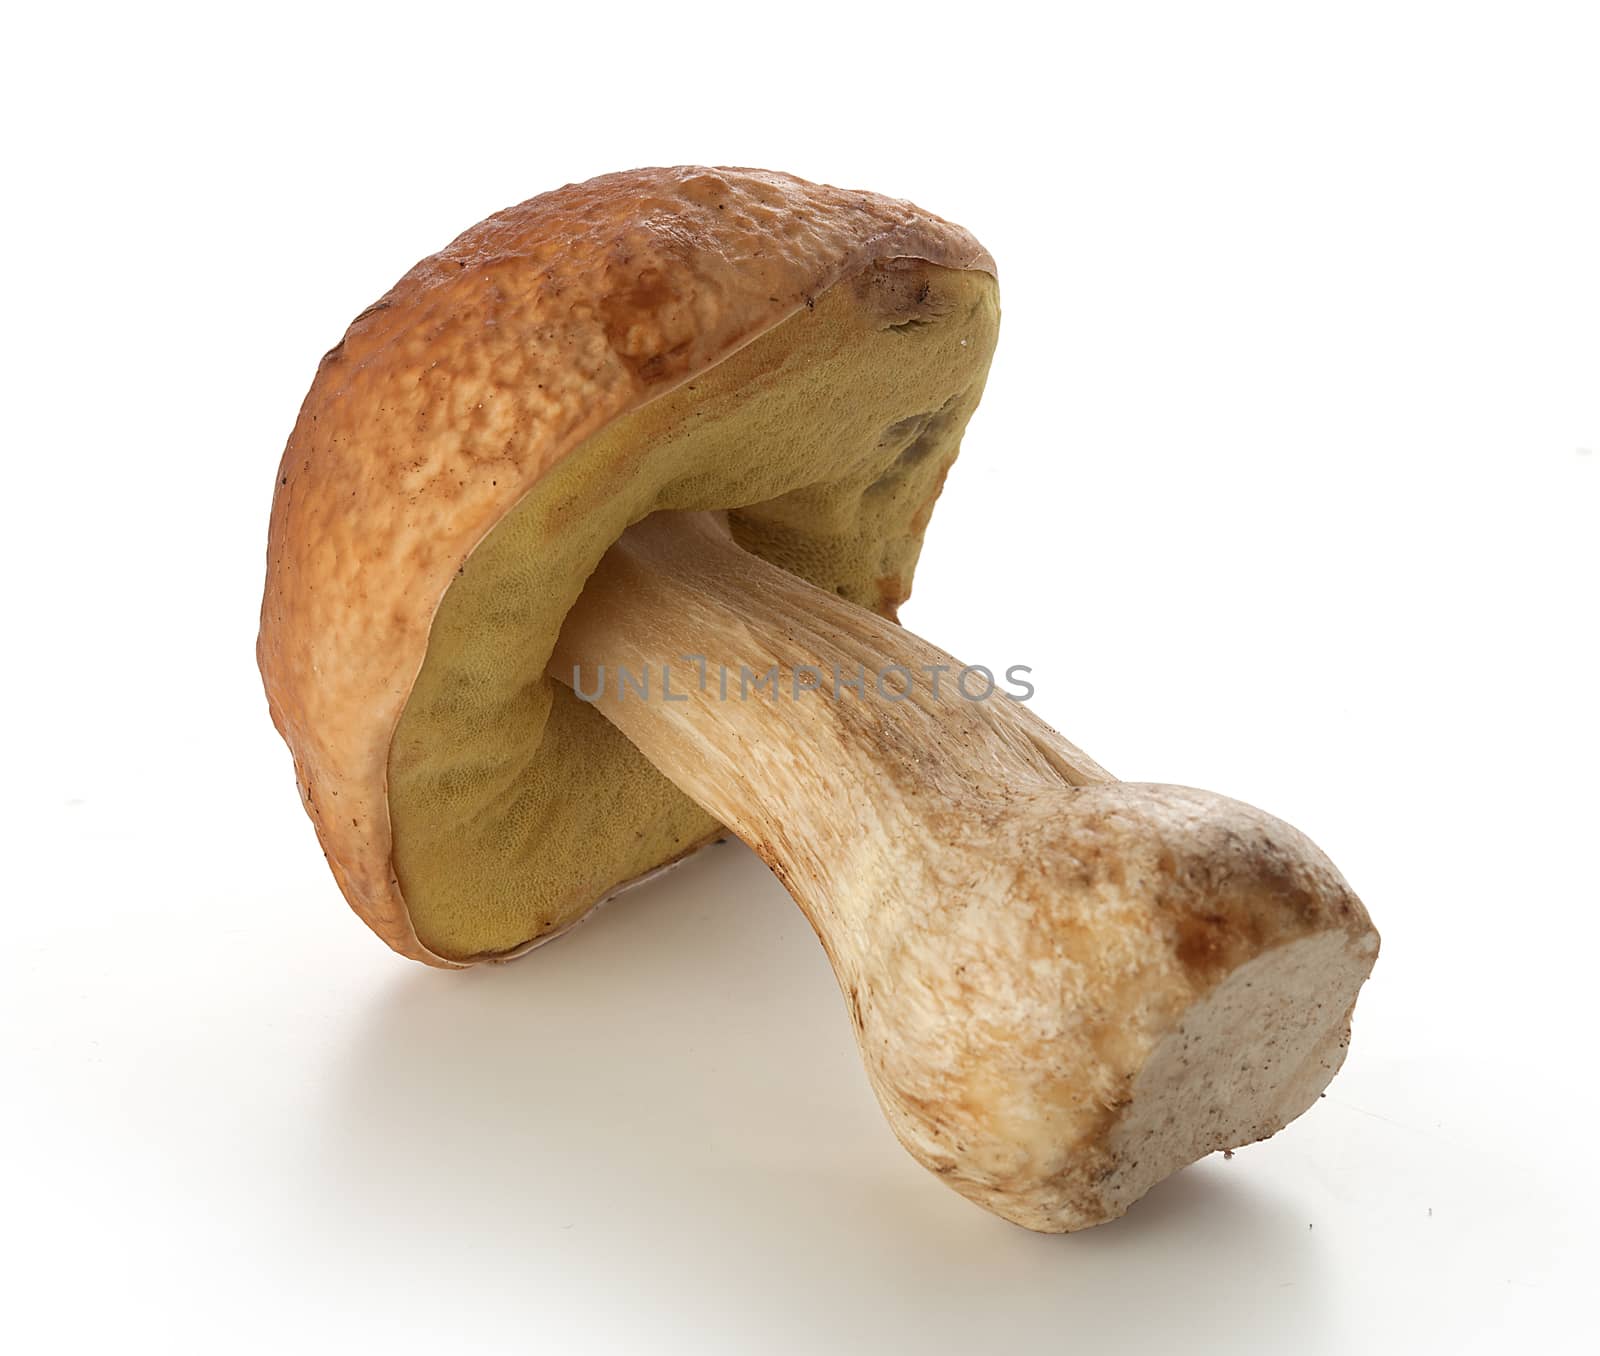 White mushroom by Angorius